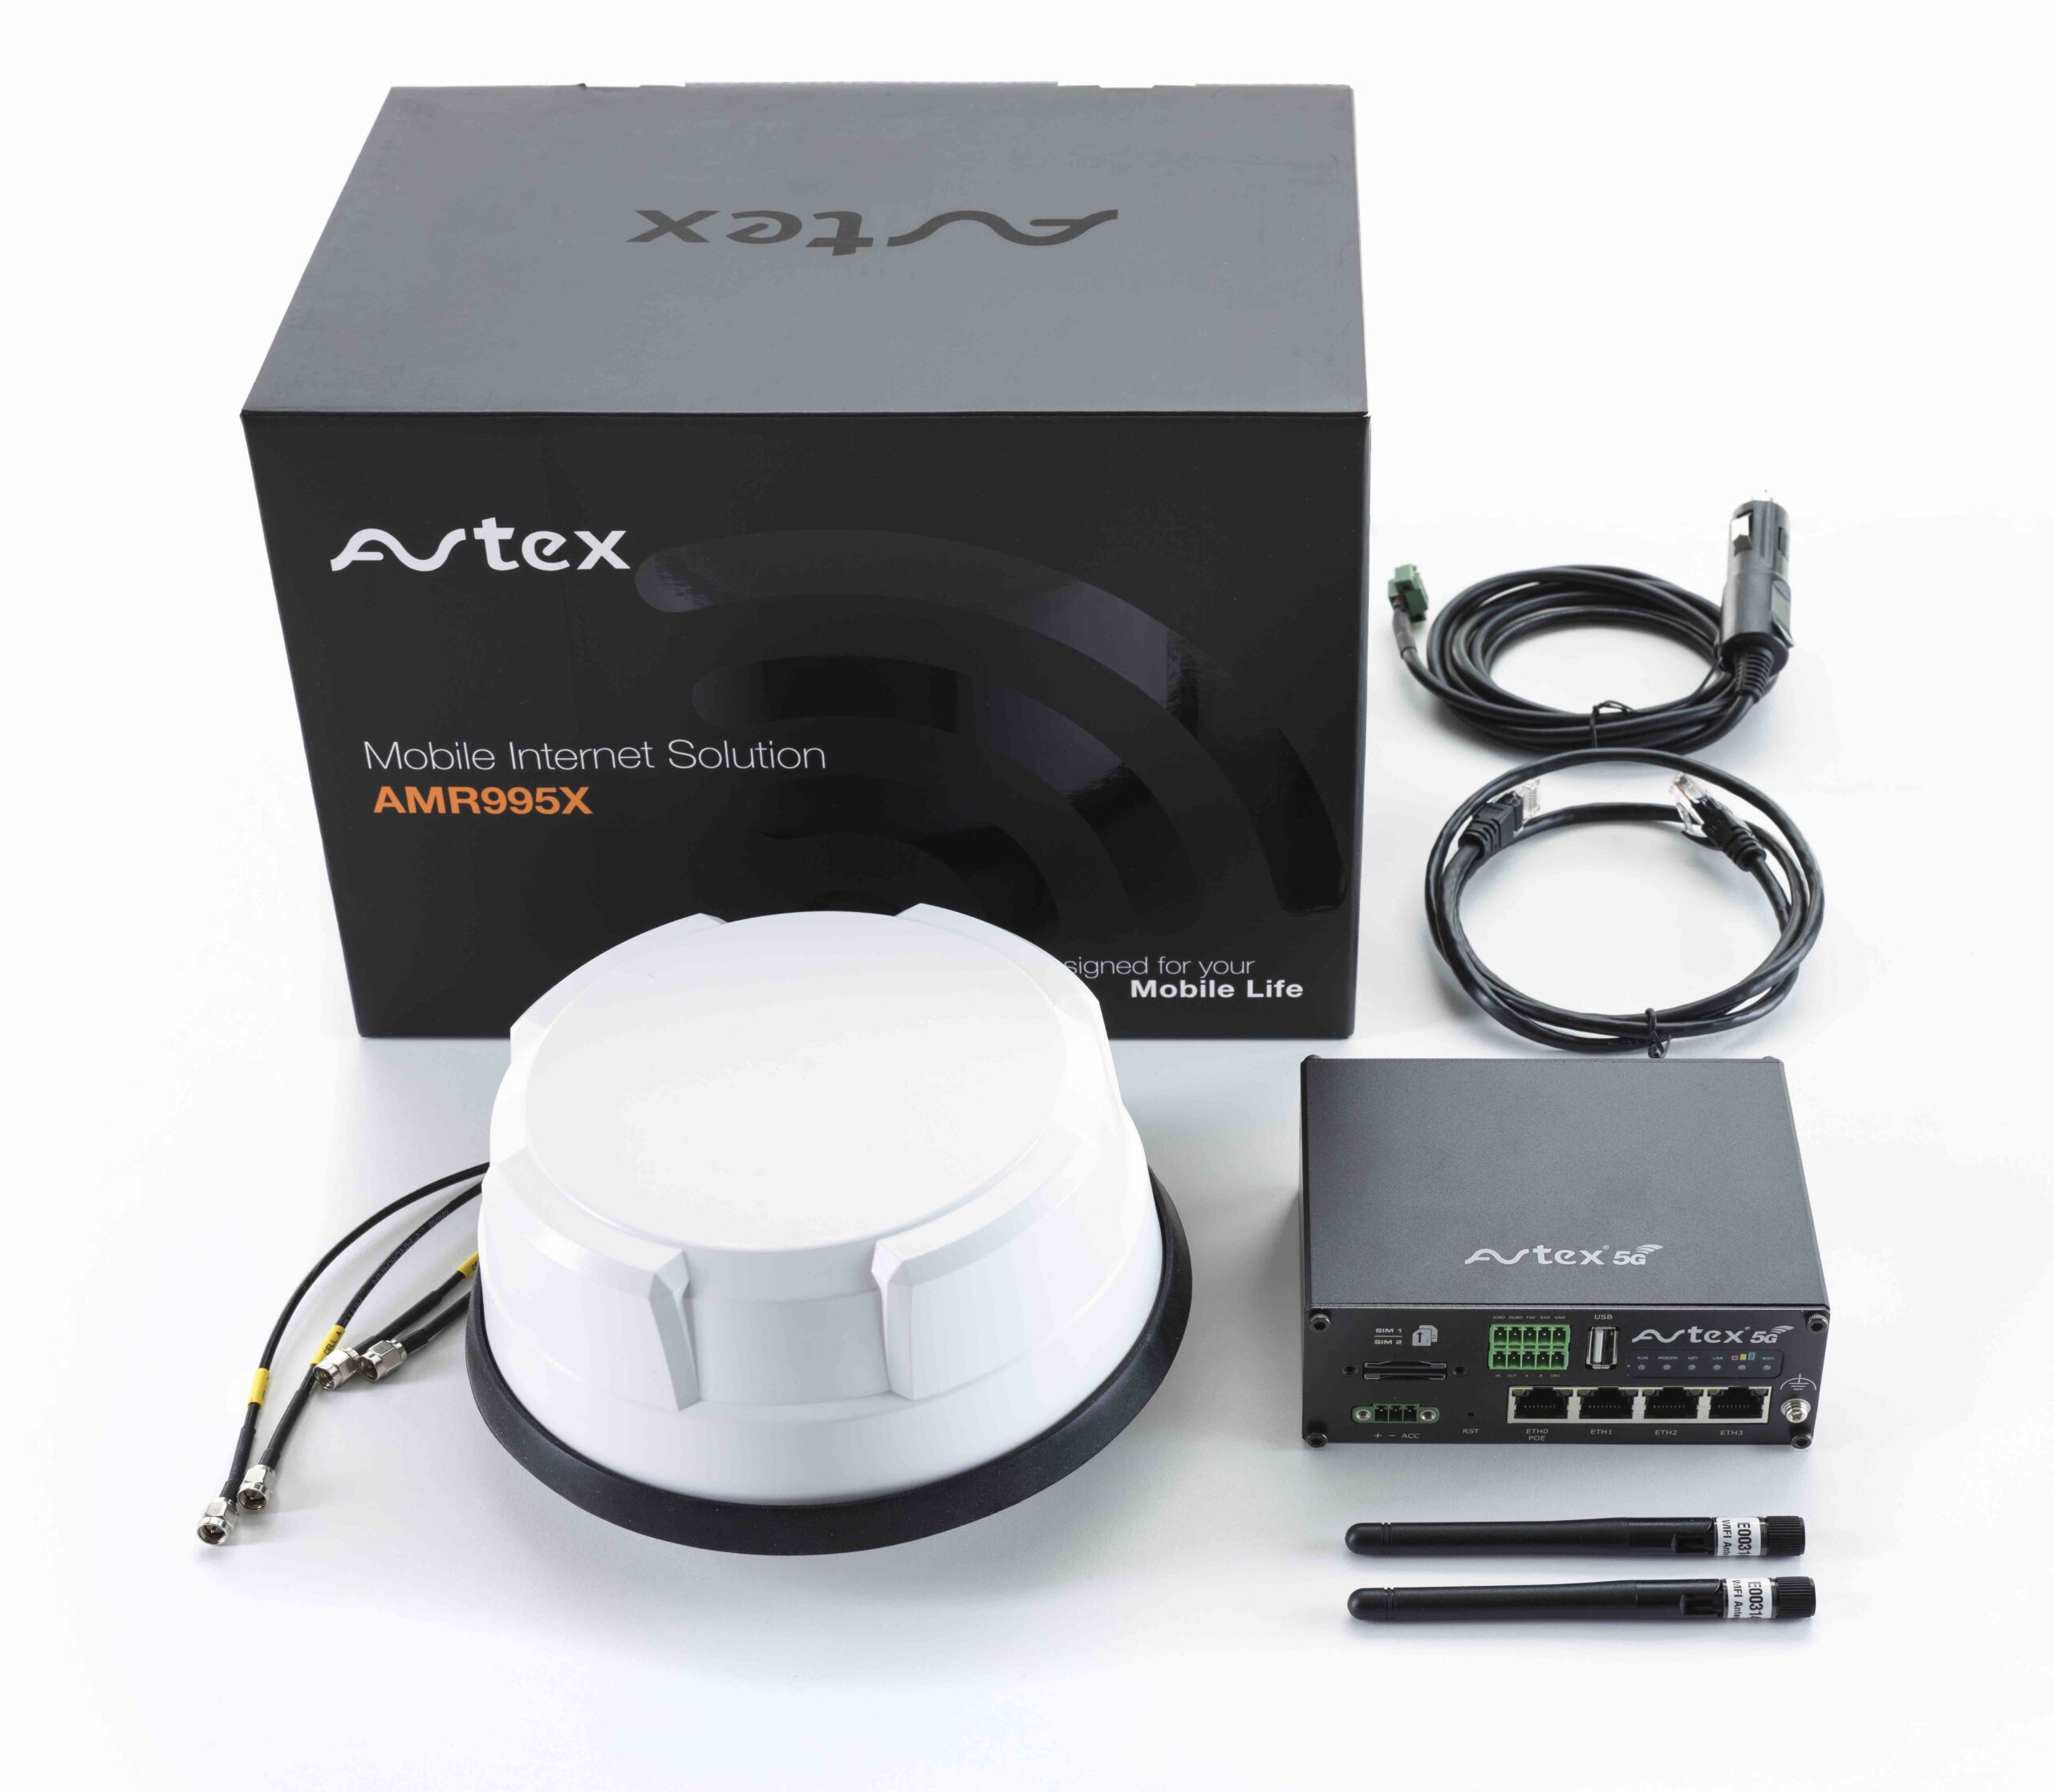 Avtex AMR995X Mobile Internet Solution